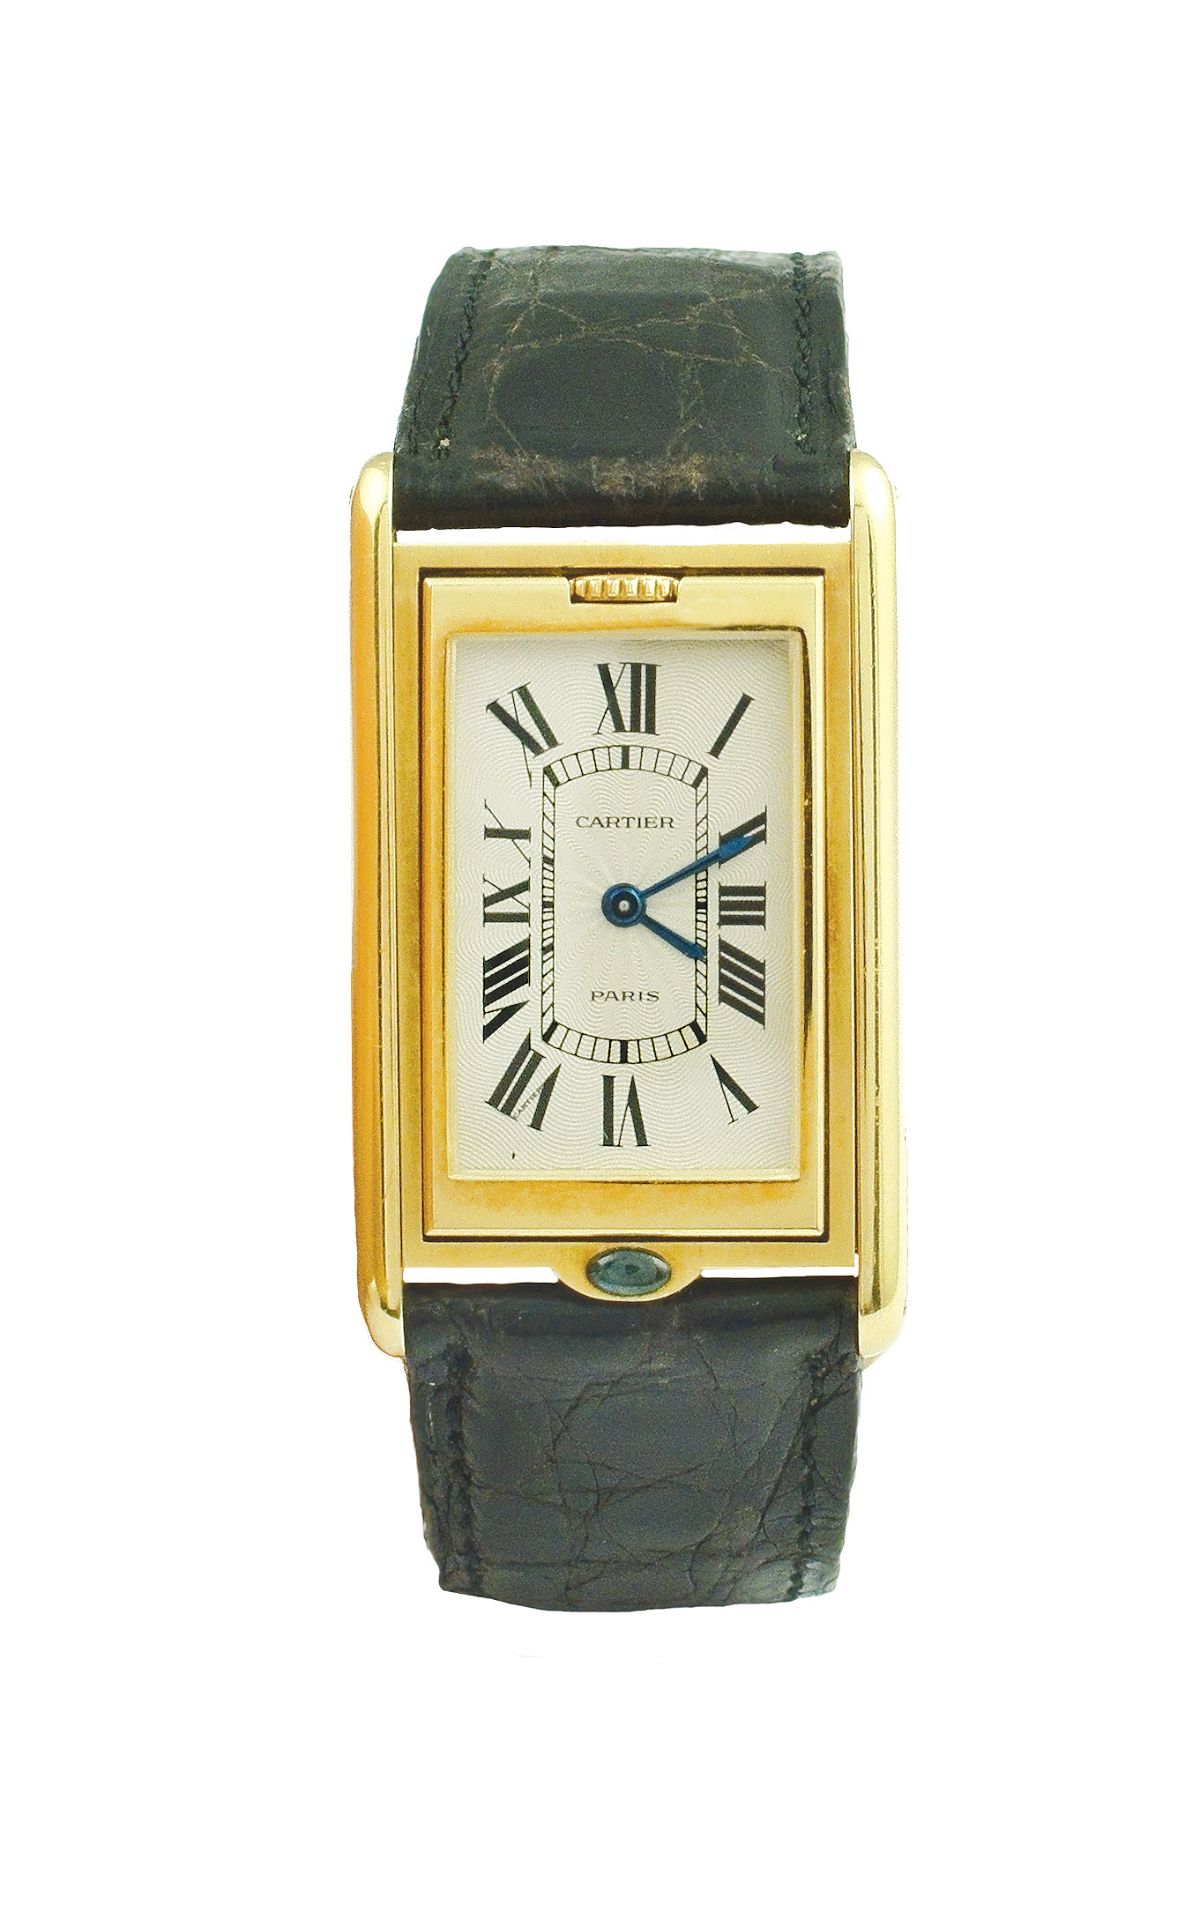 A Cartier Basculante wrist watch